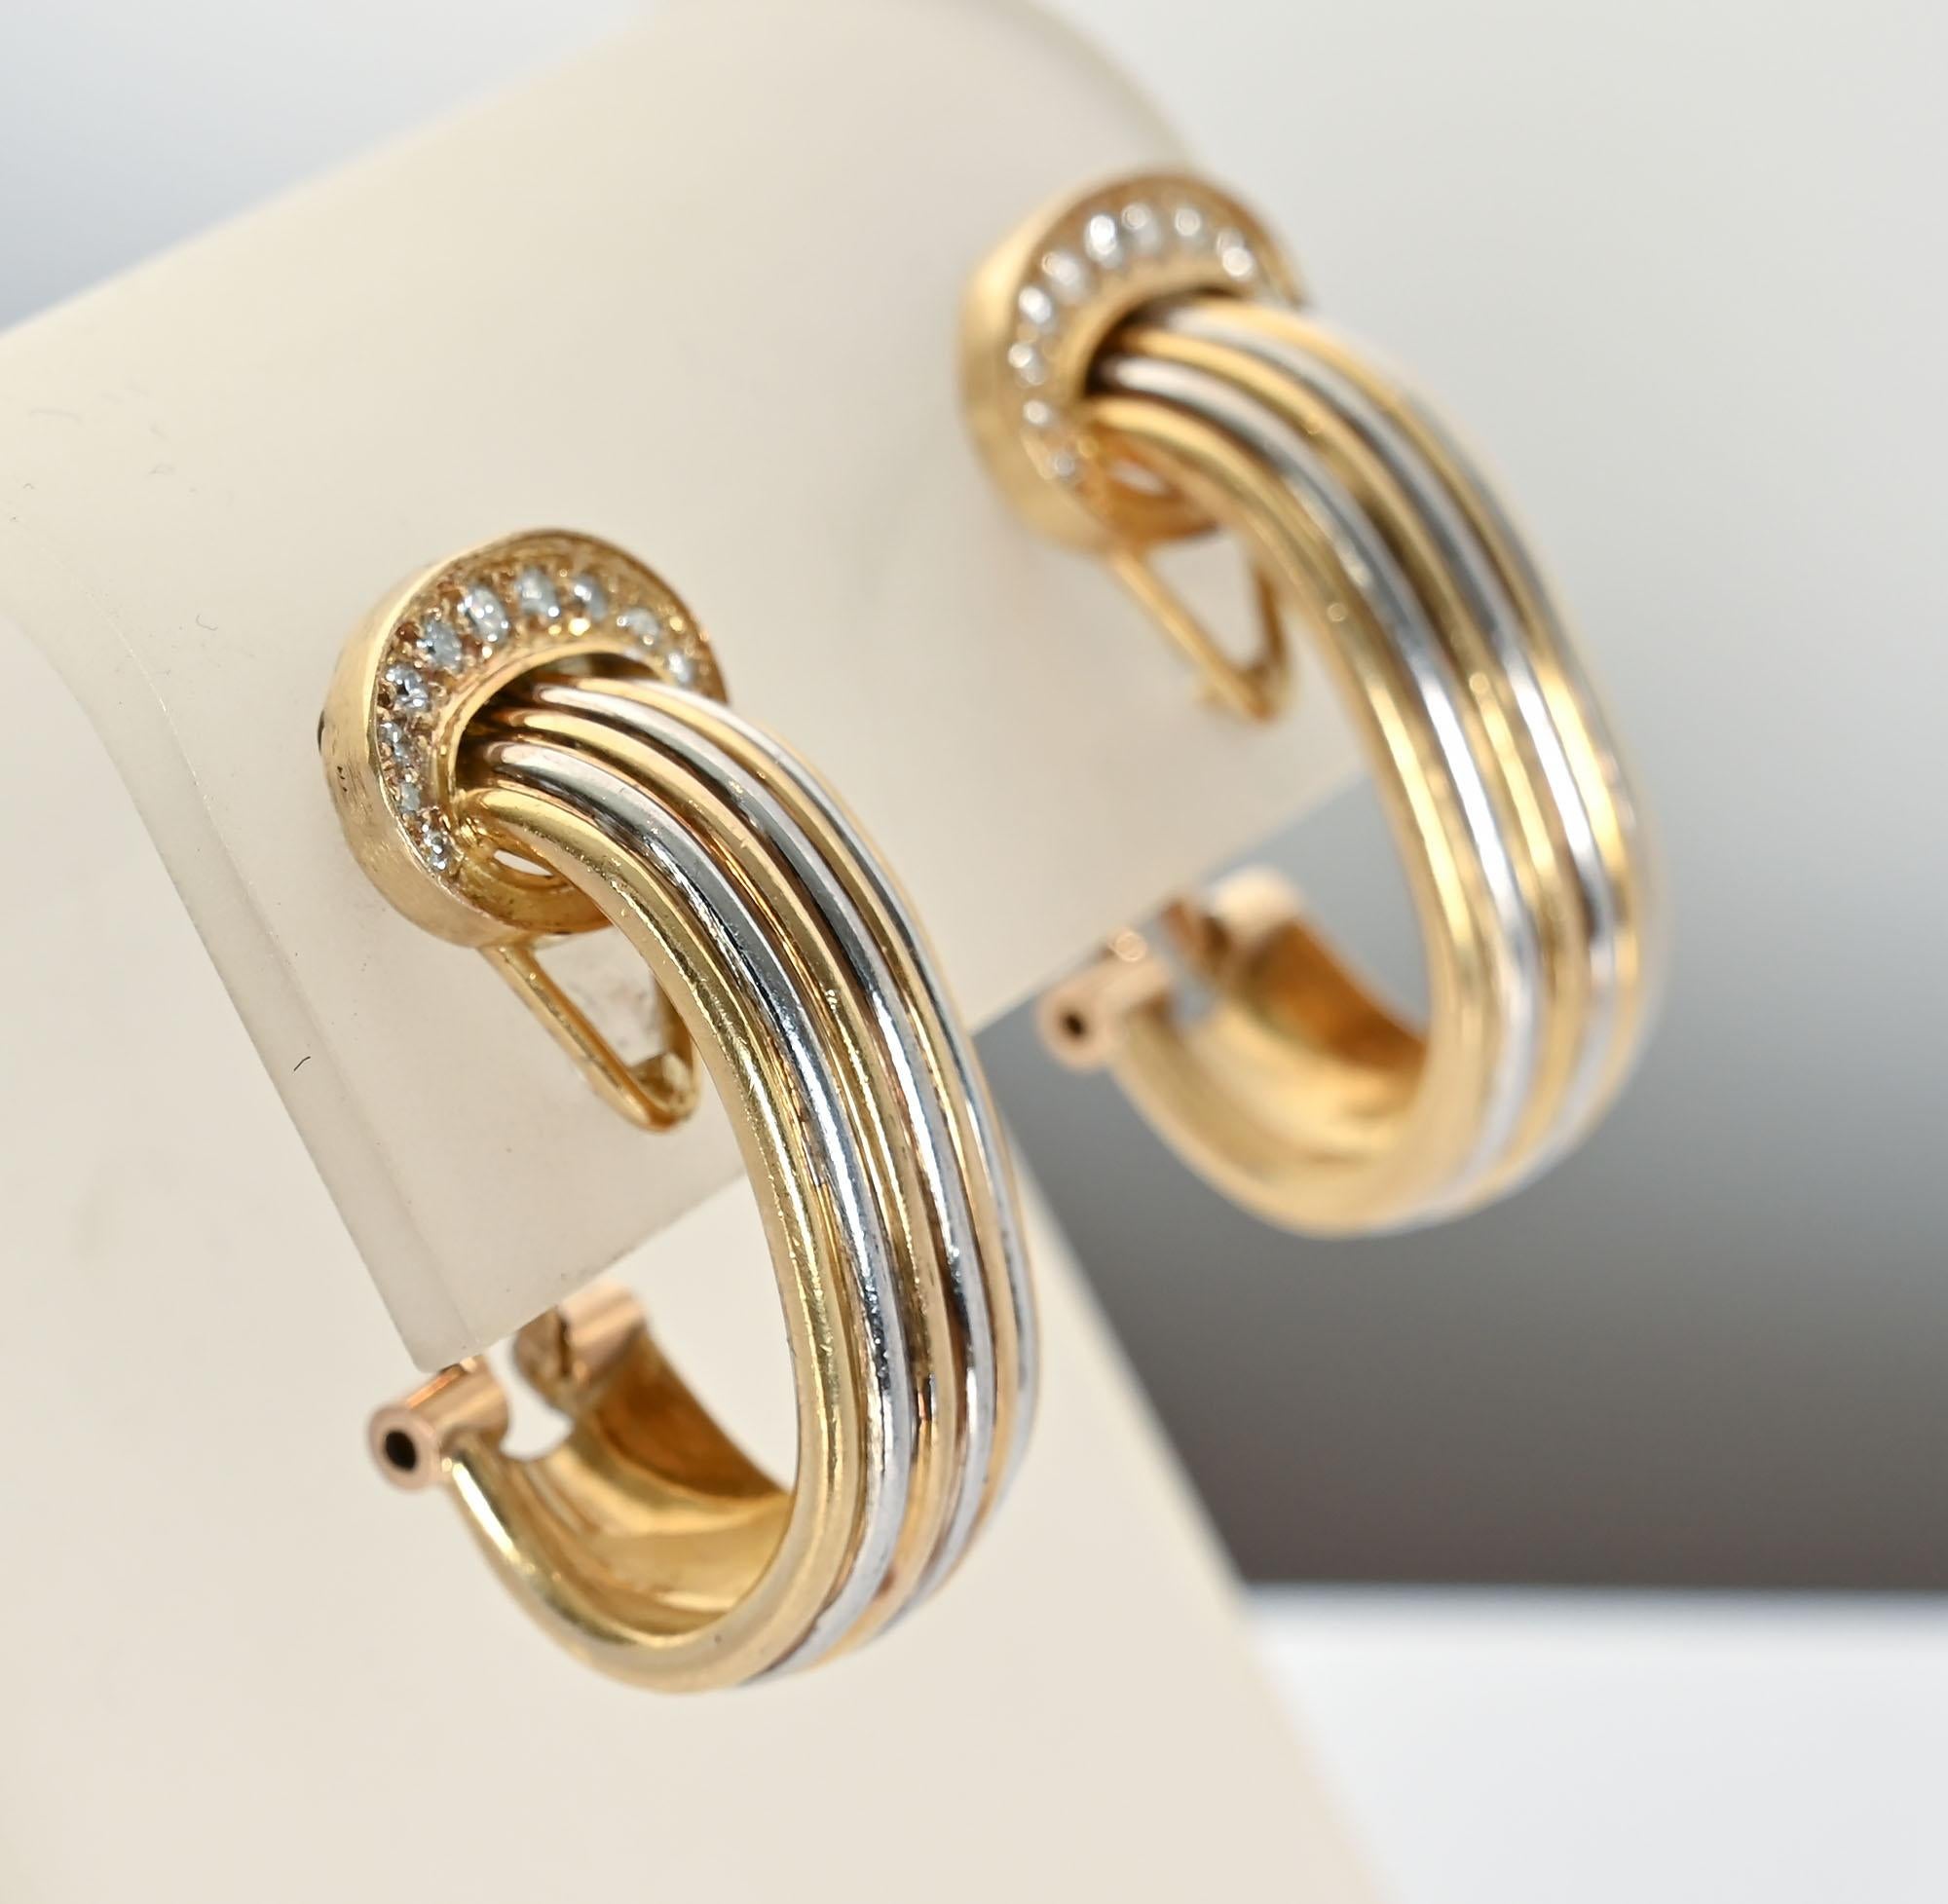 Cartier Doppel-C-Ohrringe mit abwechselnden Rippen aus Gelb- und Weißgold. Jedes C ist mit eingefassten Diamanten verziert.
Die Rückseiten sind Pfosten und Klammern. Die Maße sind 1 1/8